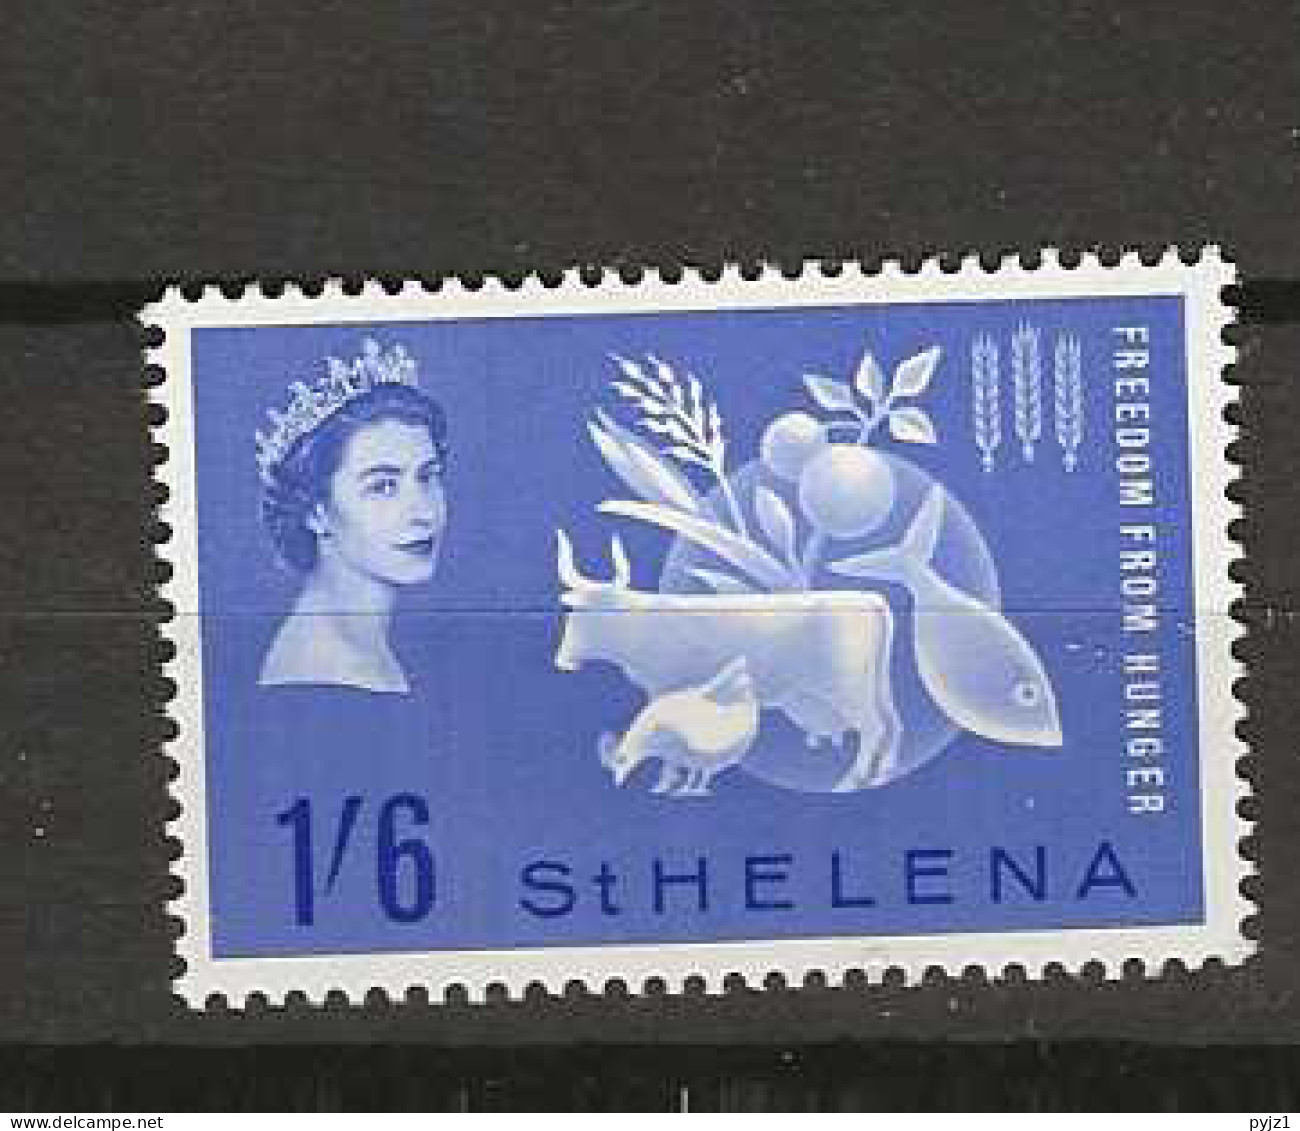 1963 MNH Saint Helena Mi 160 Postfris** - Sainte-Hélène